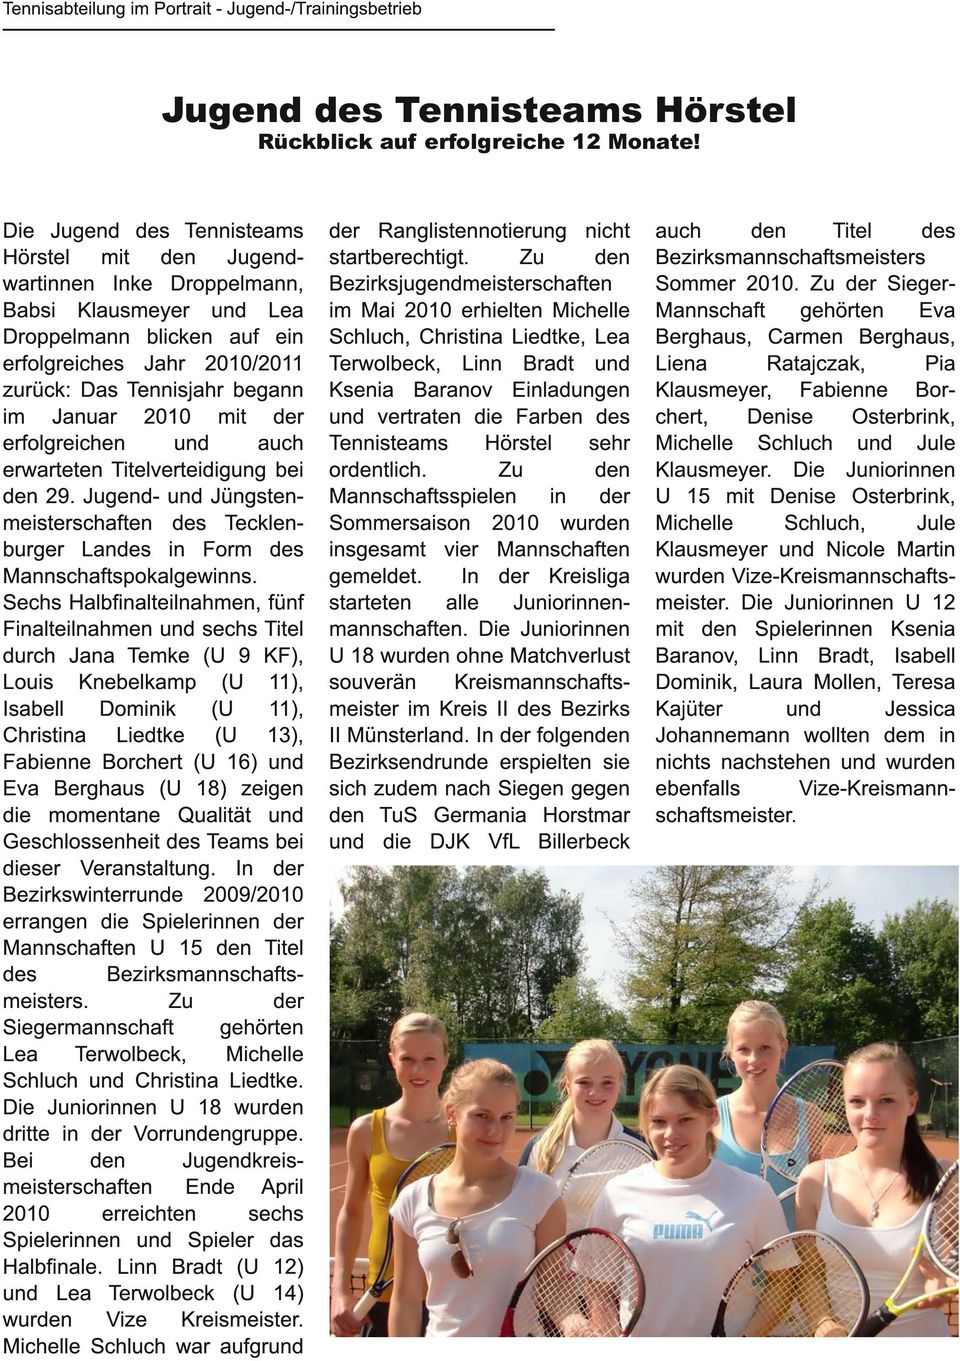 2010 mit der erfolgreichen und auch erwarteten Titelverteidigung bei den 29. Jugend- und Jüngstenmeisterschaften des Tecklenburger Landes in Form des Mannschaftspokalgewinns.